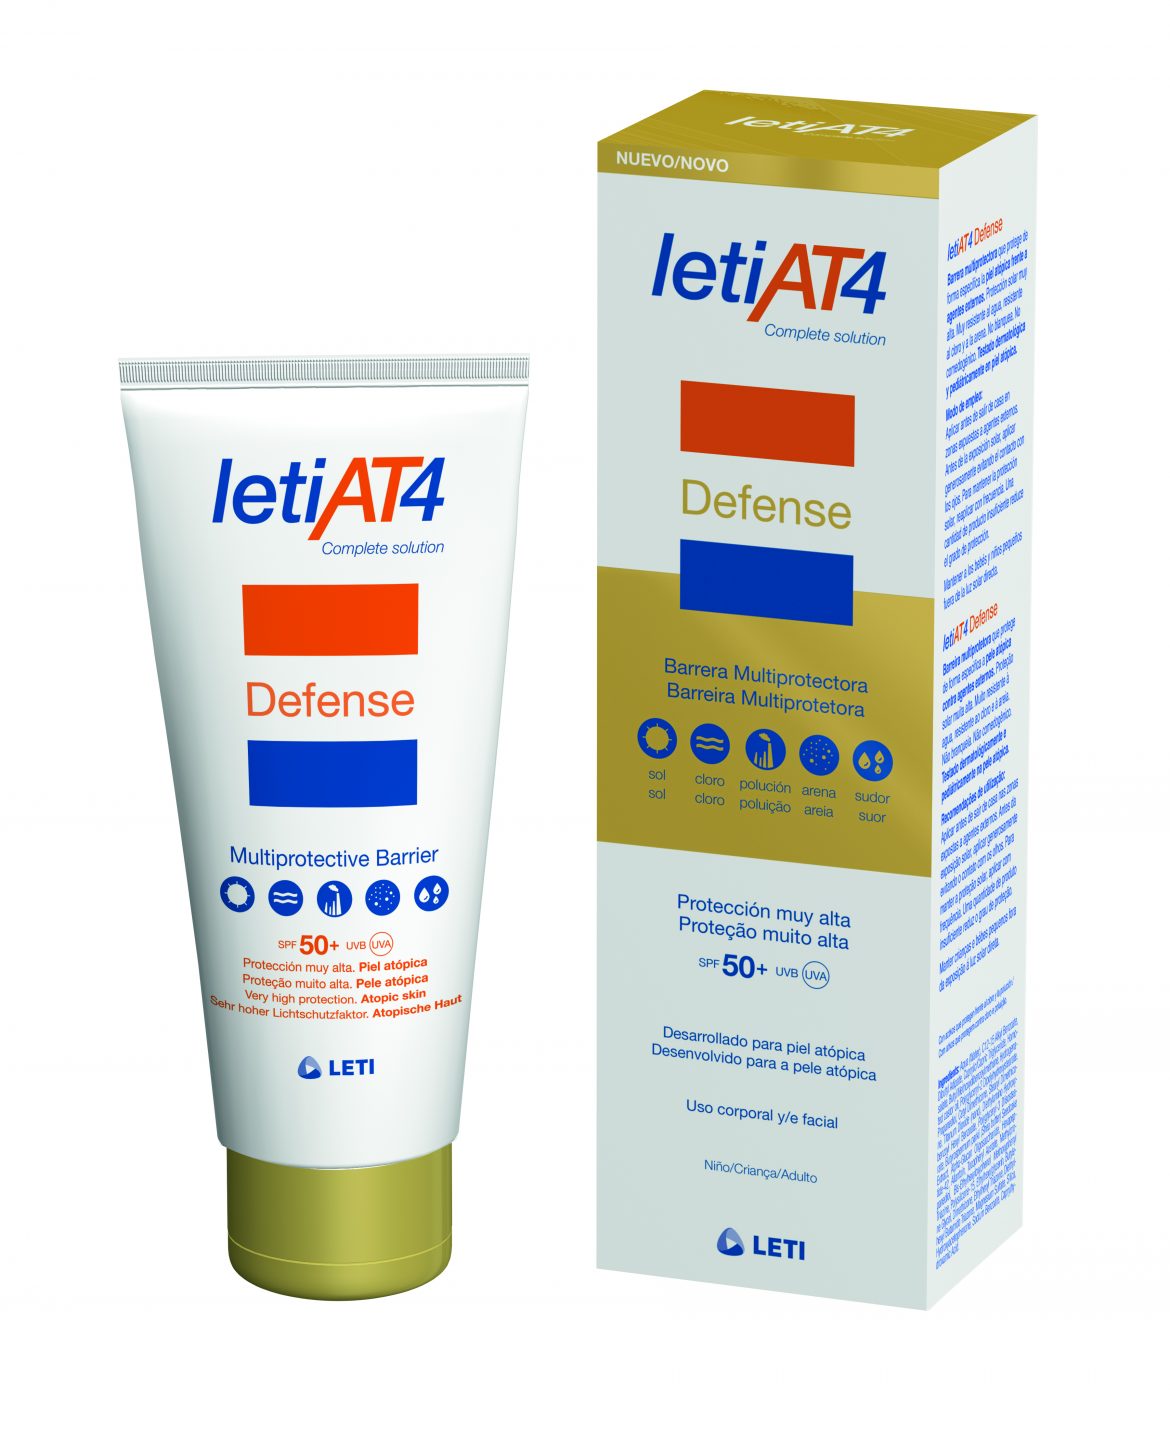 LETIAT4 Defense la revolución para las pieles atópicas LETI crea la primera barrera multi-protectora que protege y repara específicamente la piel atópica frente a agentes externos